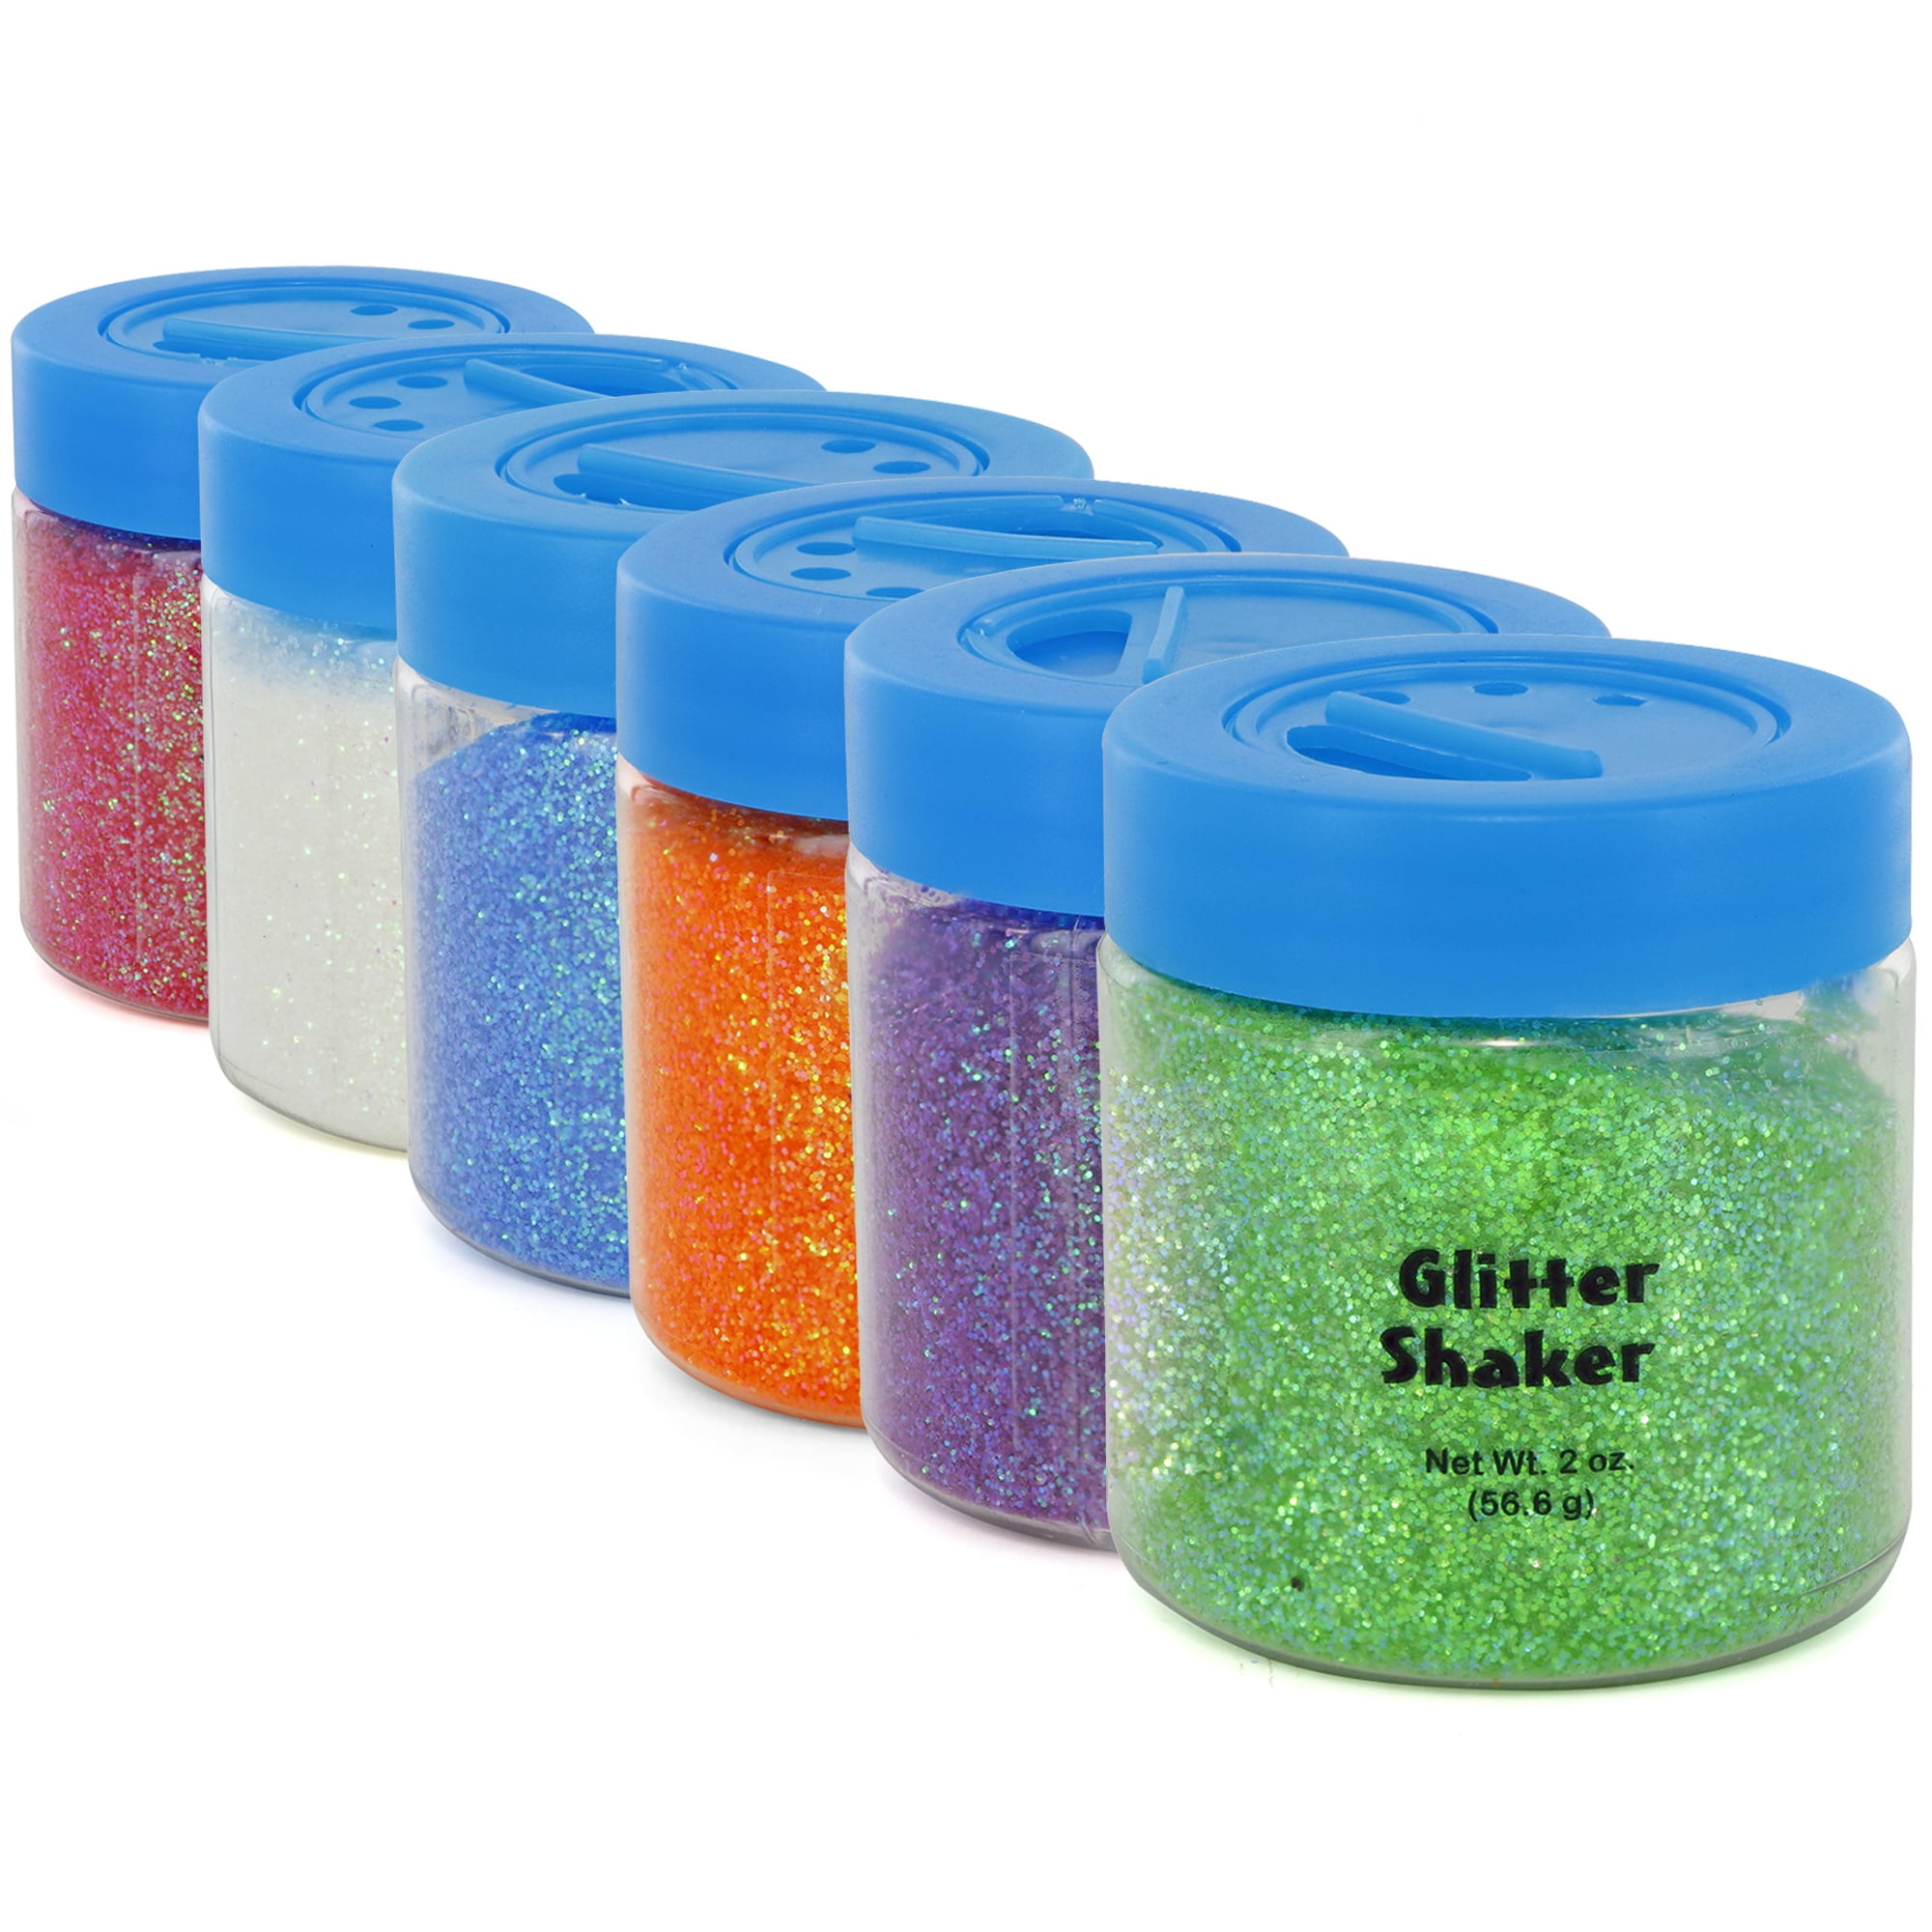 Glitter for Slime, Extra fine Glitter Shakers in Shaker Jars